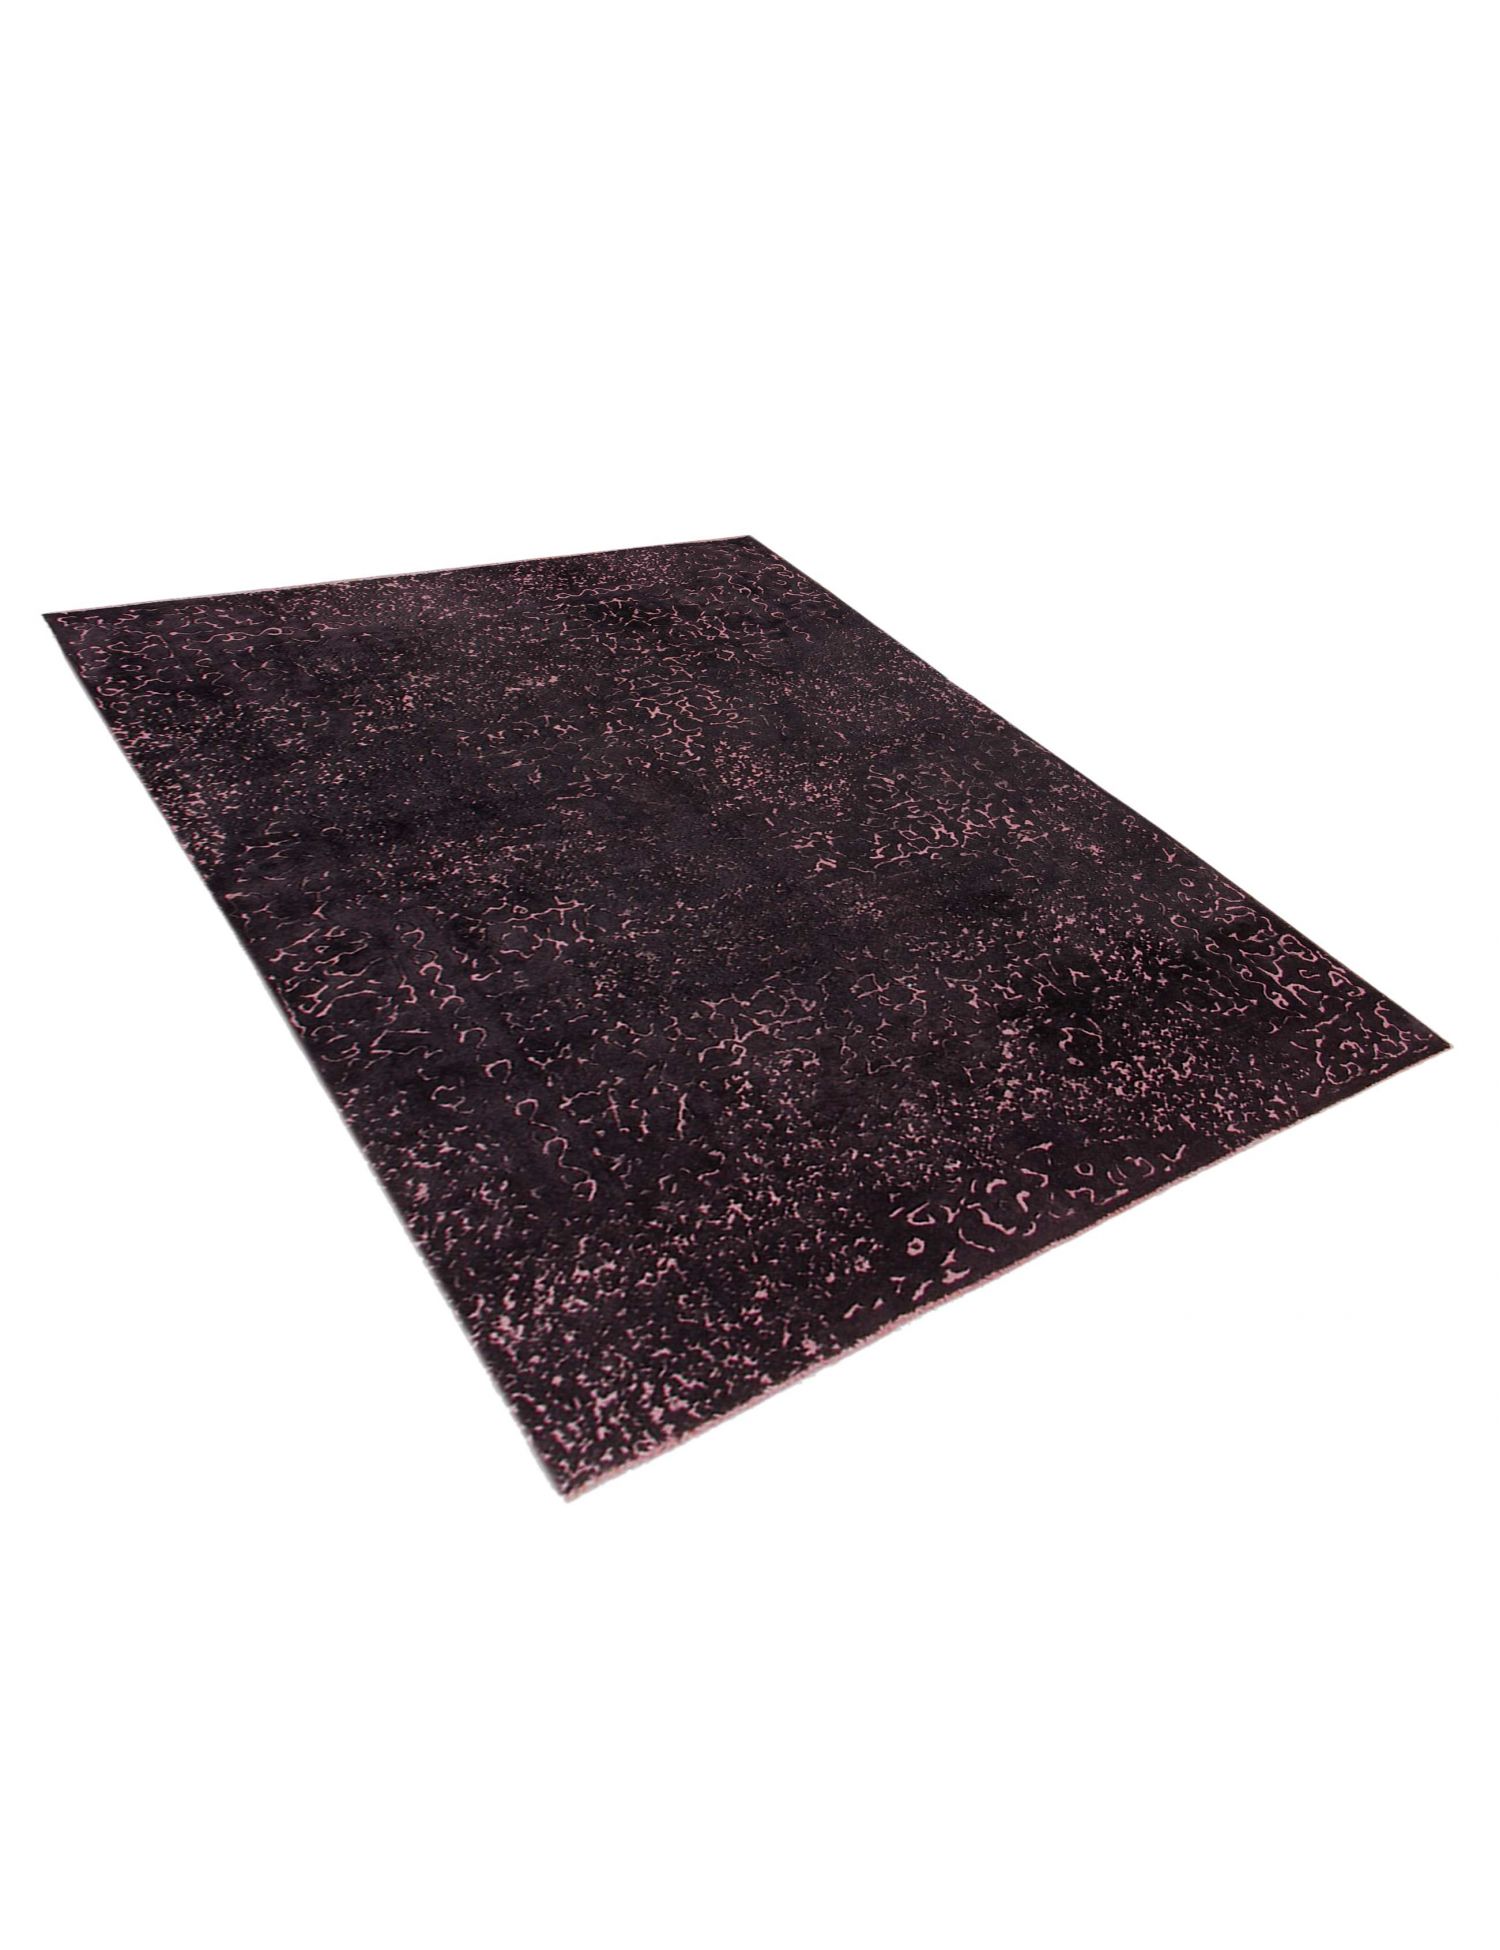 Persian Vintage Carpet  black <br/>280 x 193 cm